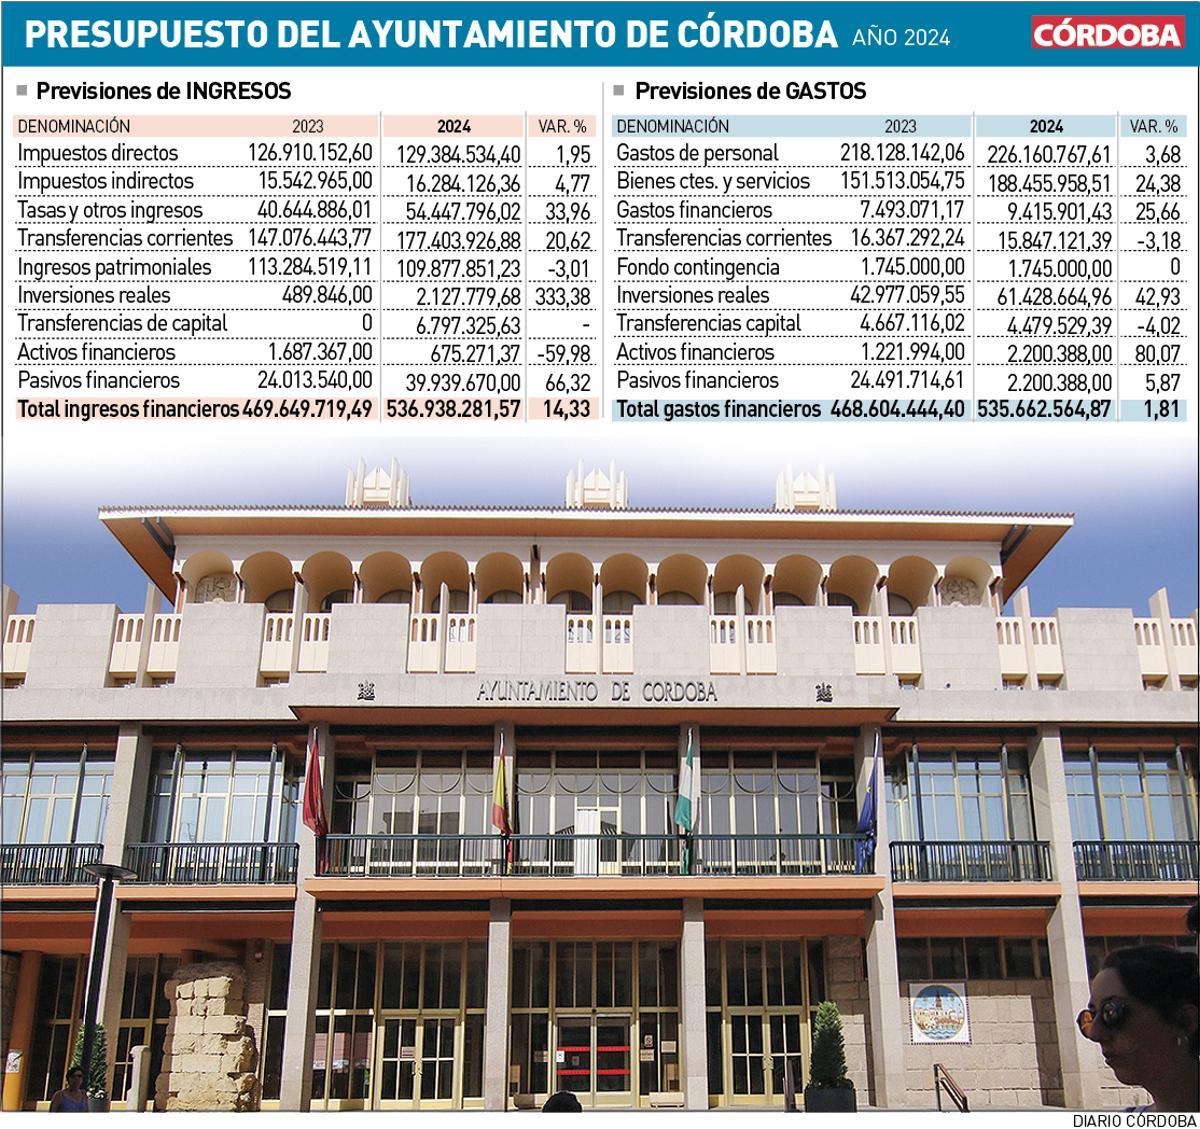 Presupuesto del Ayuntamiento de Córdoba 2024.